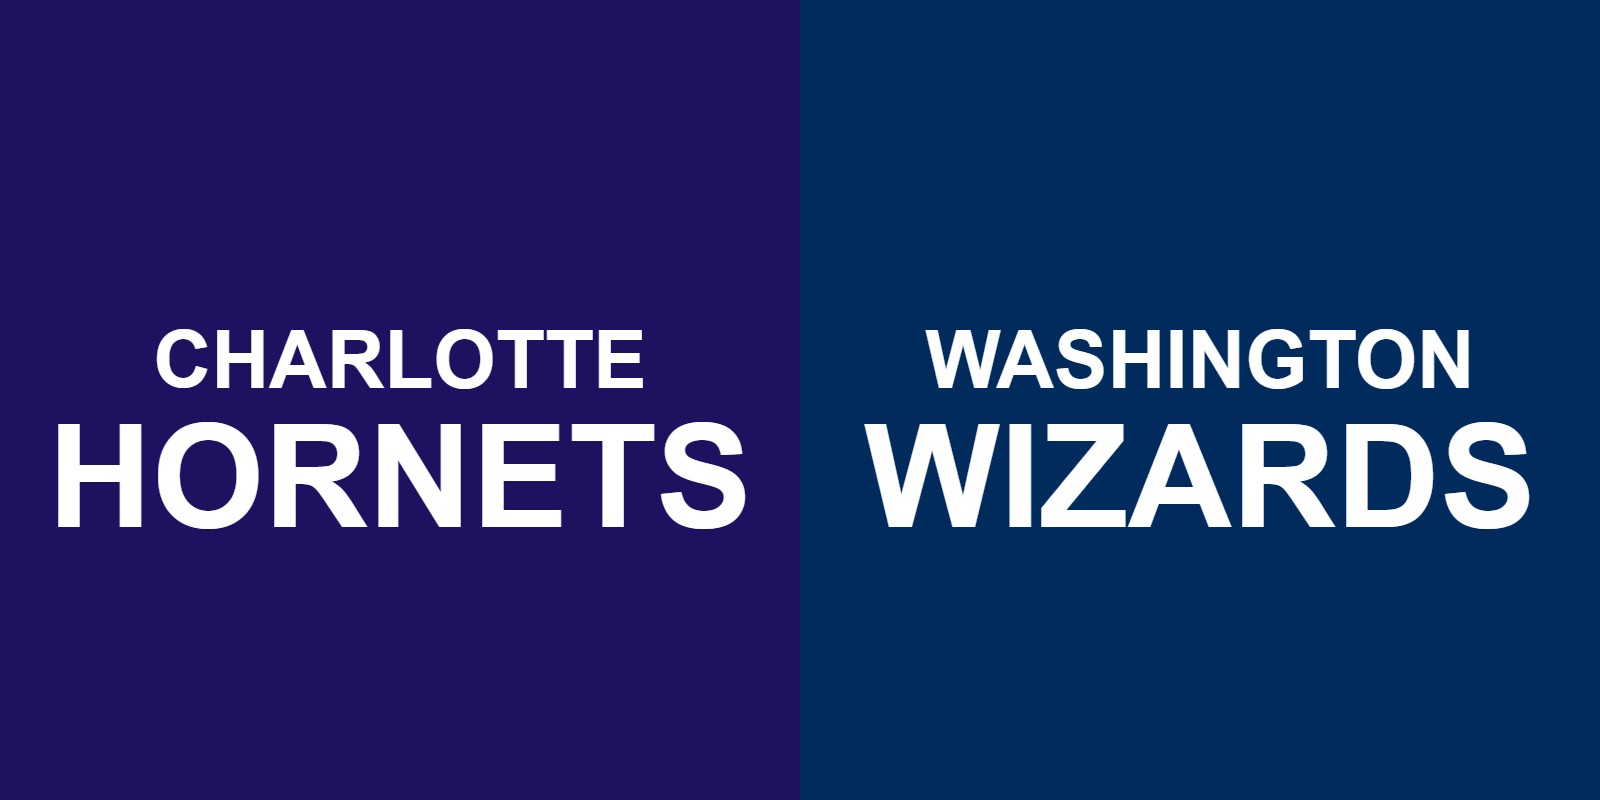 Hornets vs Wizards